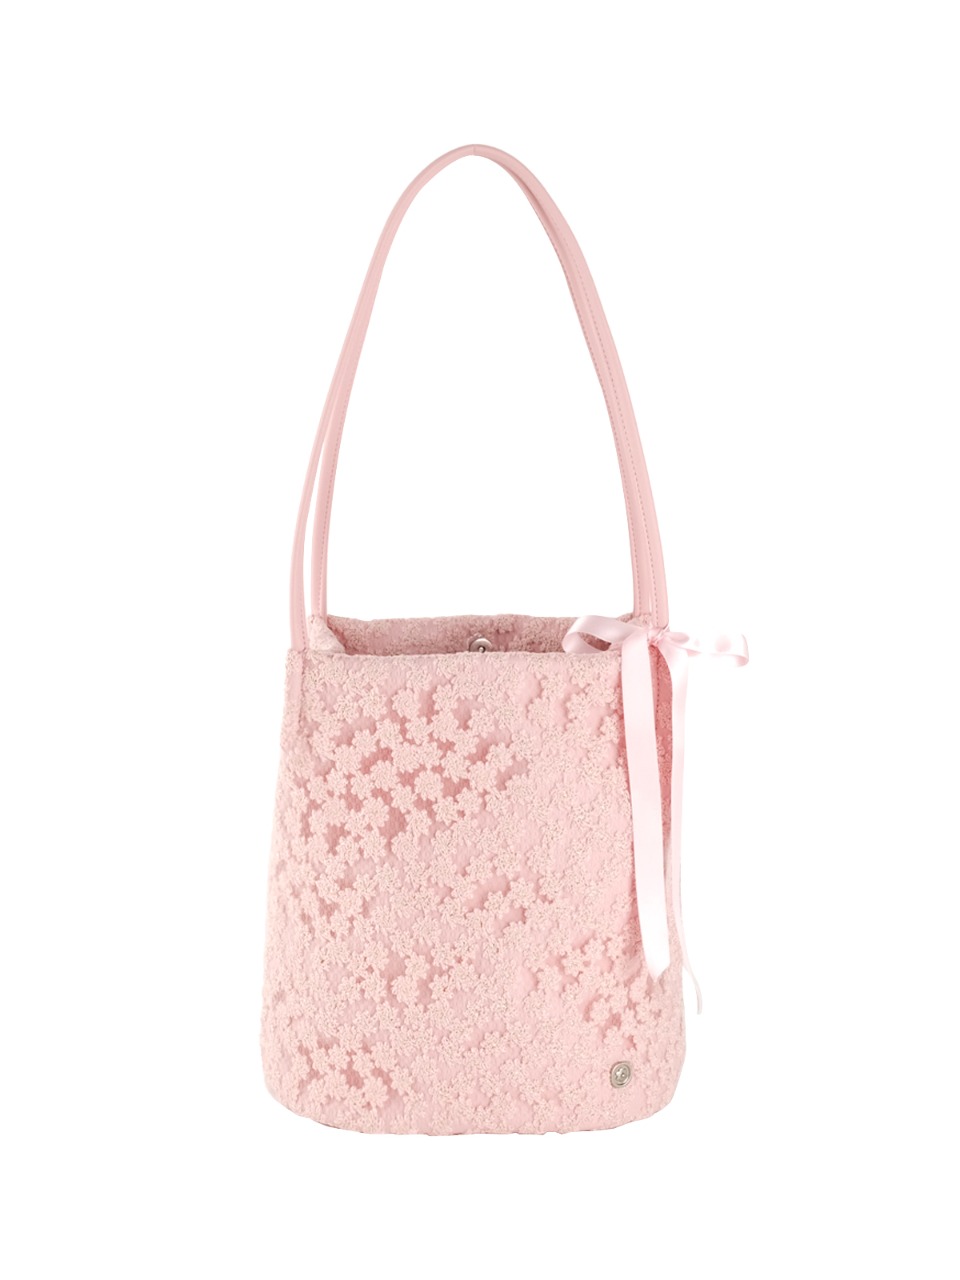 Lace cottage bag - rose pink - ovuni